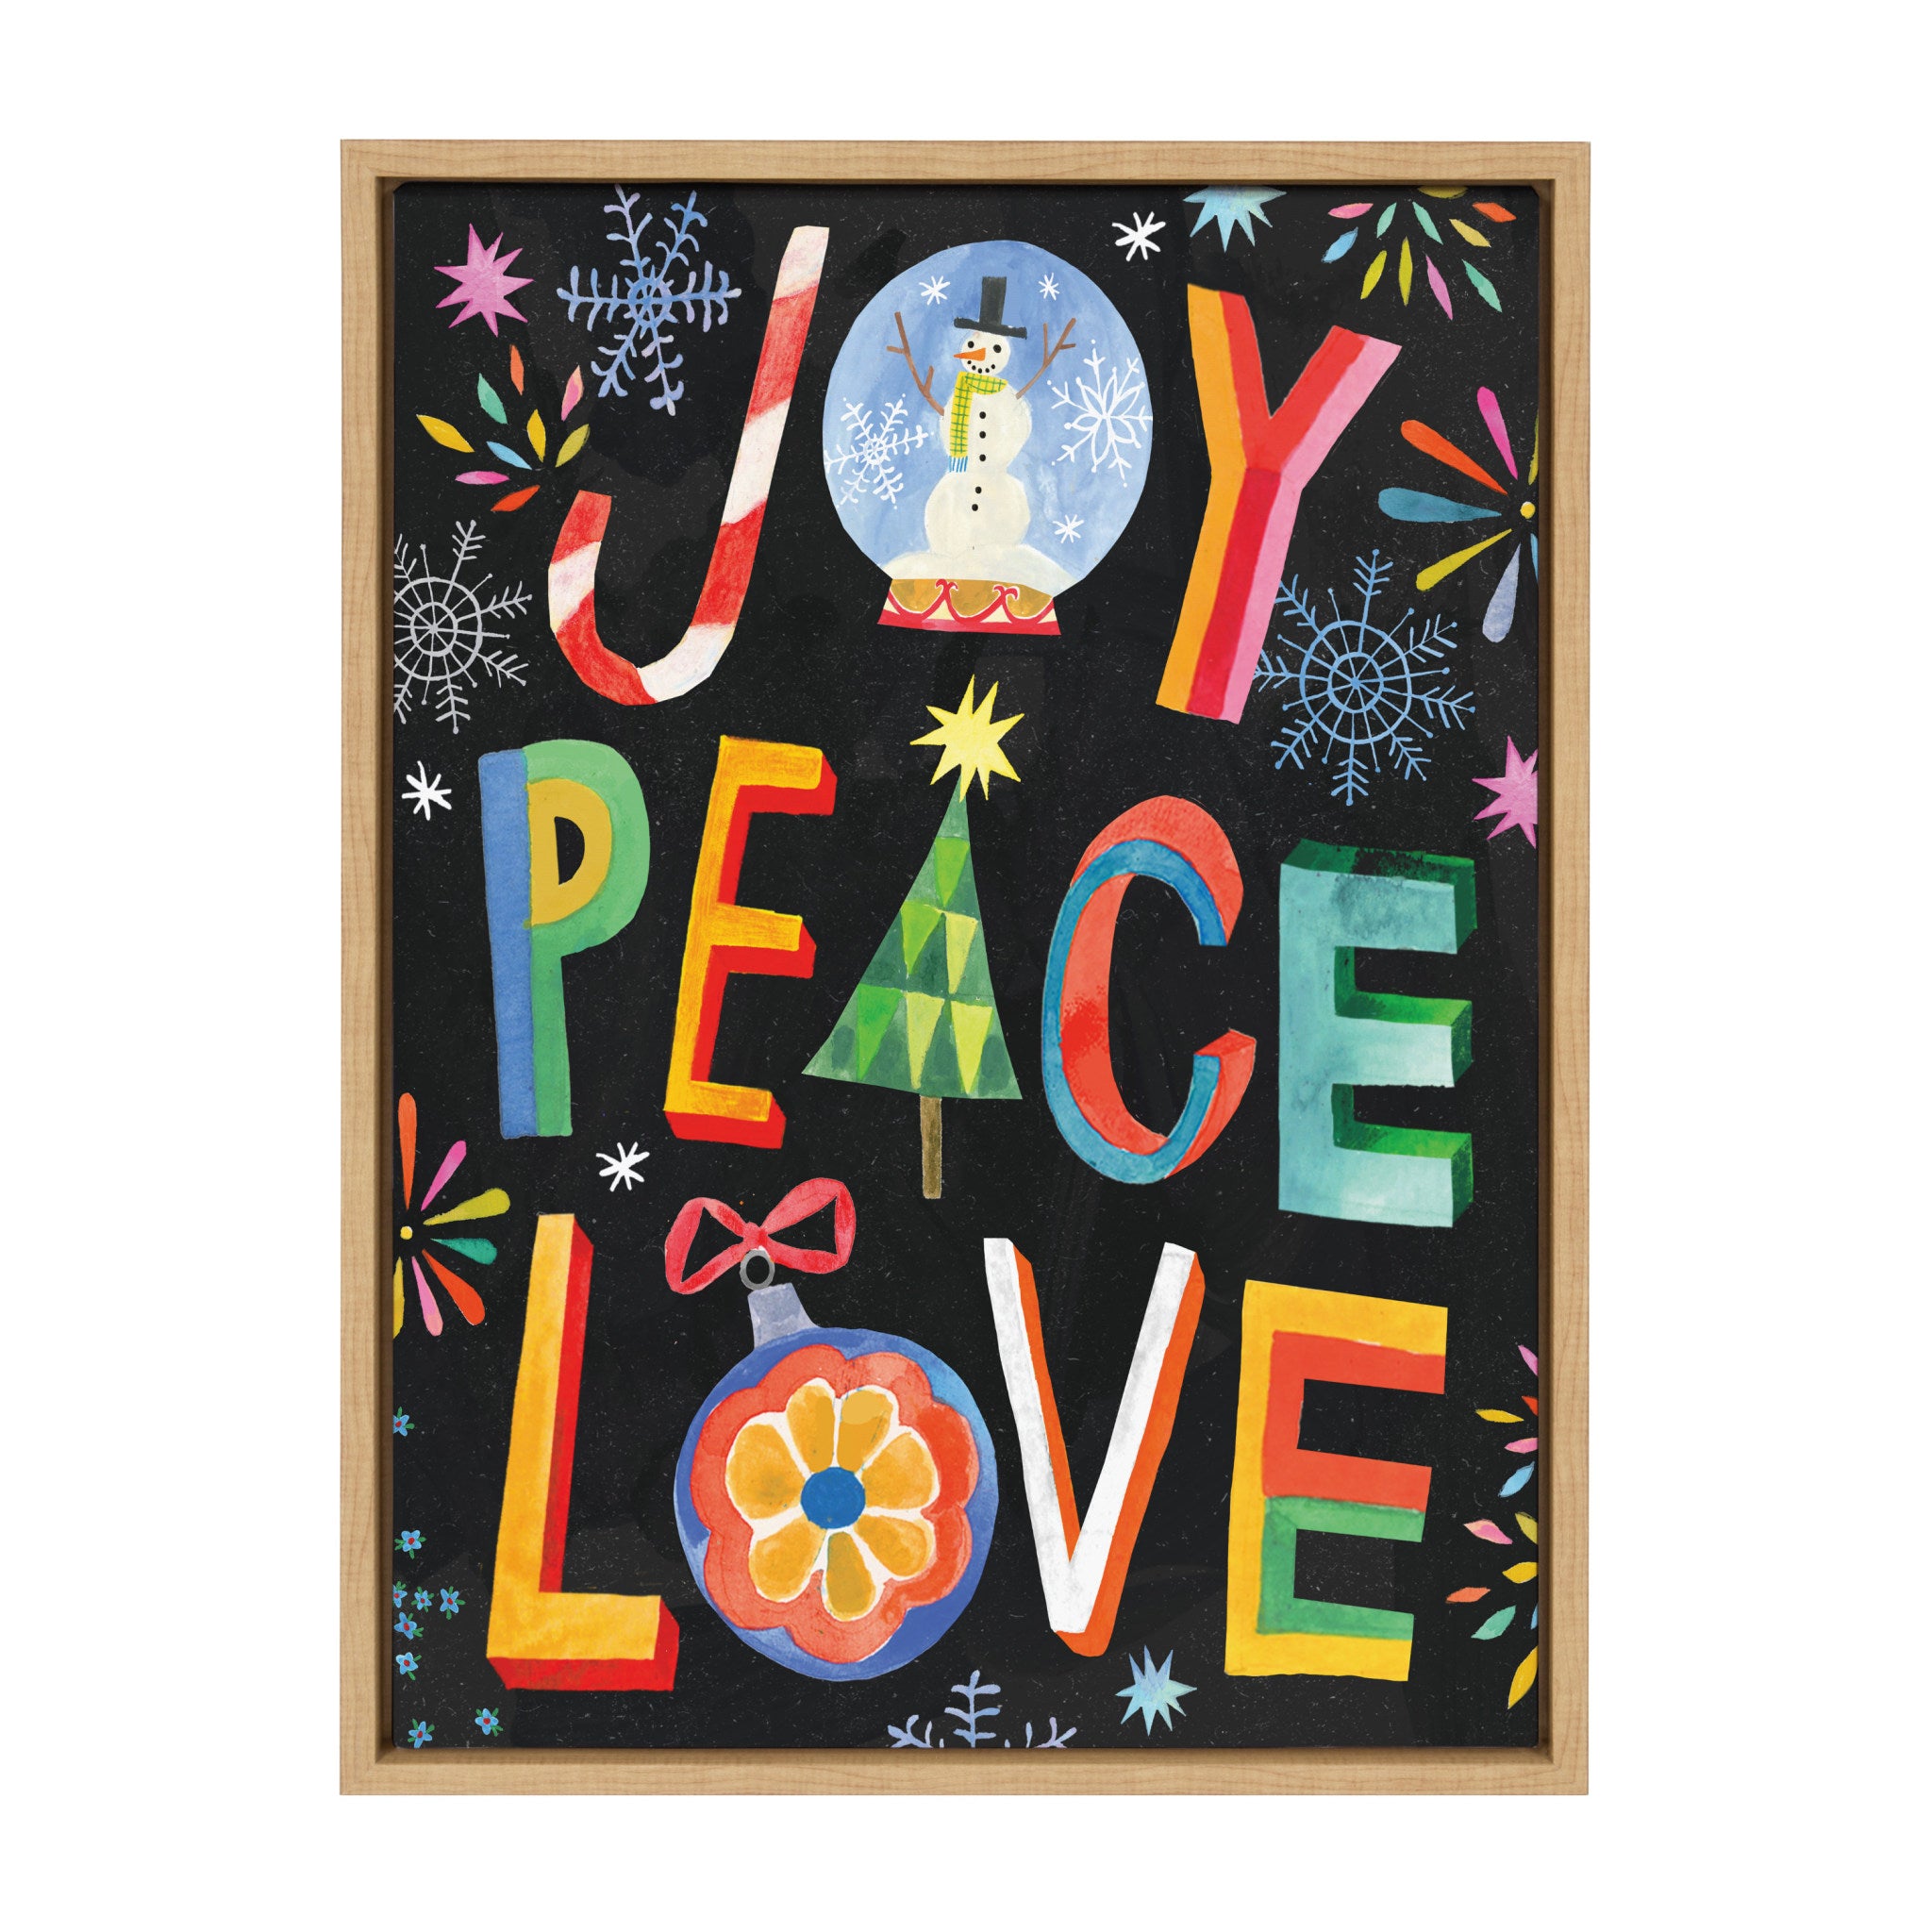 Sylvie XMAS Joy Peace Love Framed Canvas by Shannon Snow